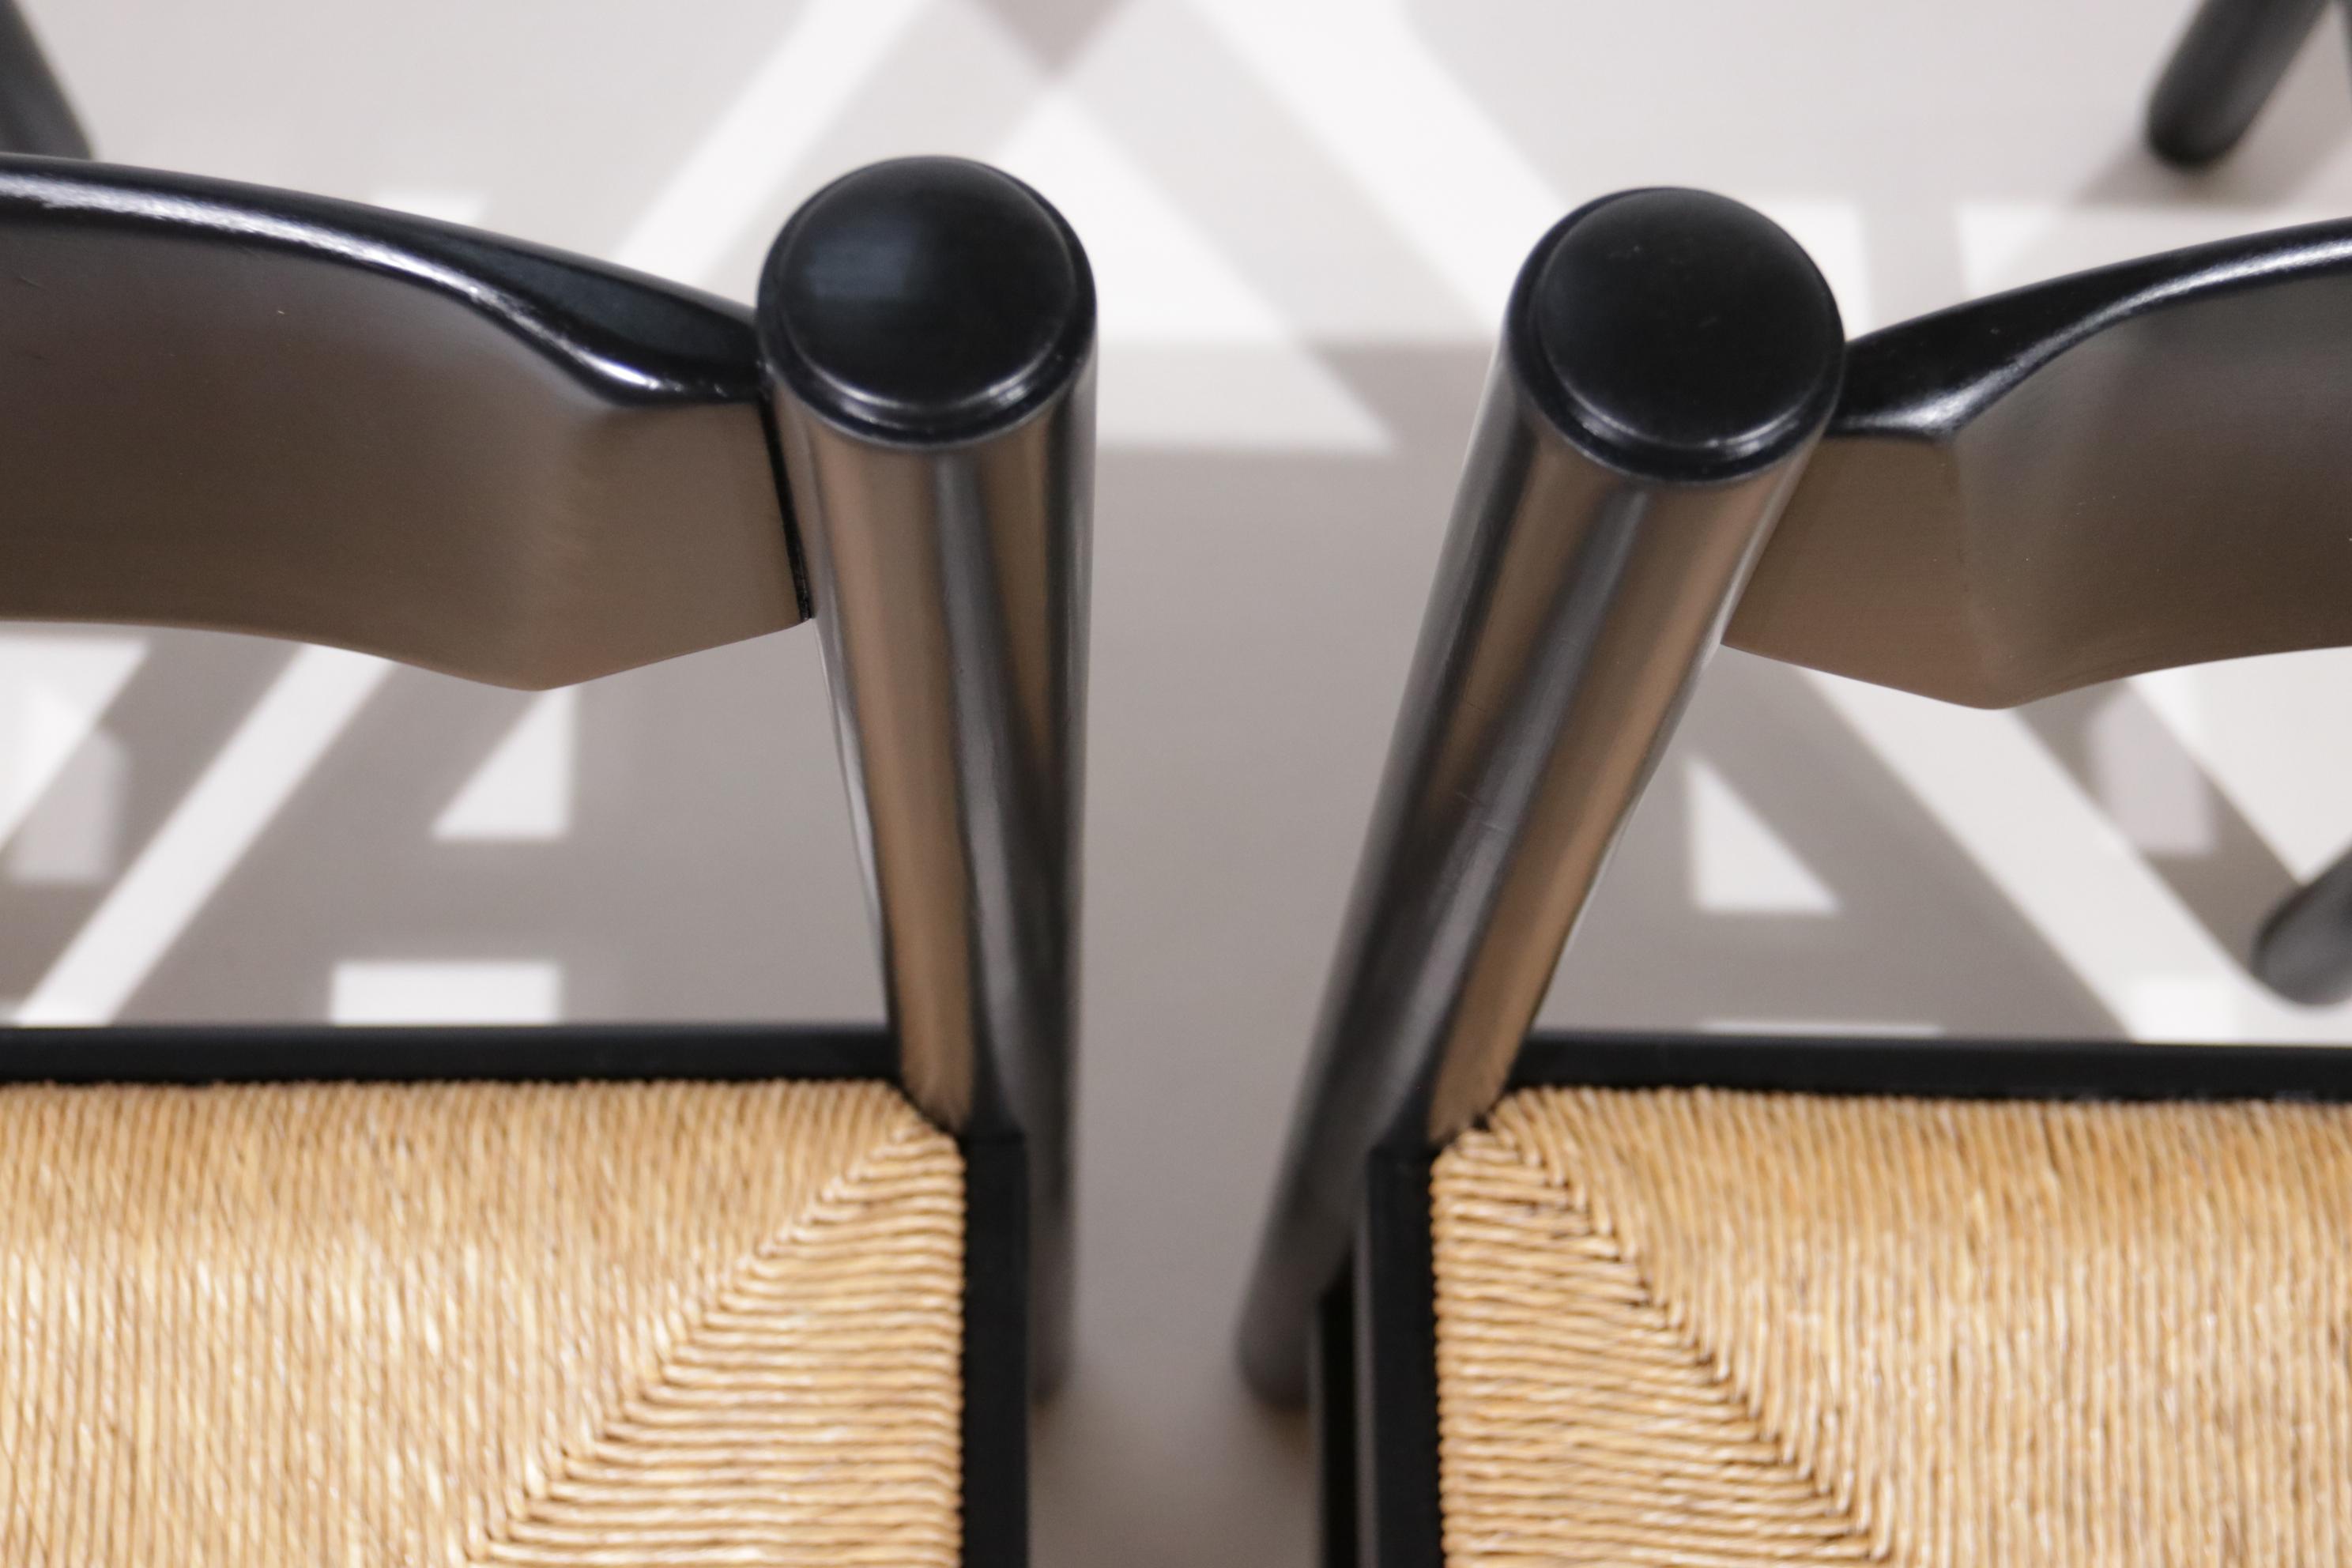 Ces chaises sont souvent attribuées à Vico Magistretti, produites par Cassina (attr.). Fabriqué en Italie, datant des années 70.
Fabriqué en bois massif, peint en noir et siège en jonc.
S'intègre parfaitement dans les intérieurs où des matériaux